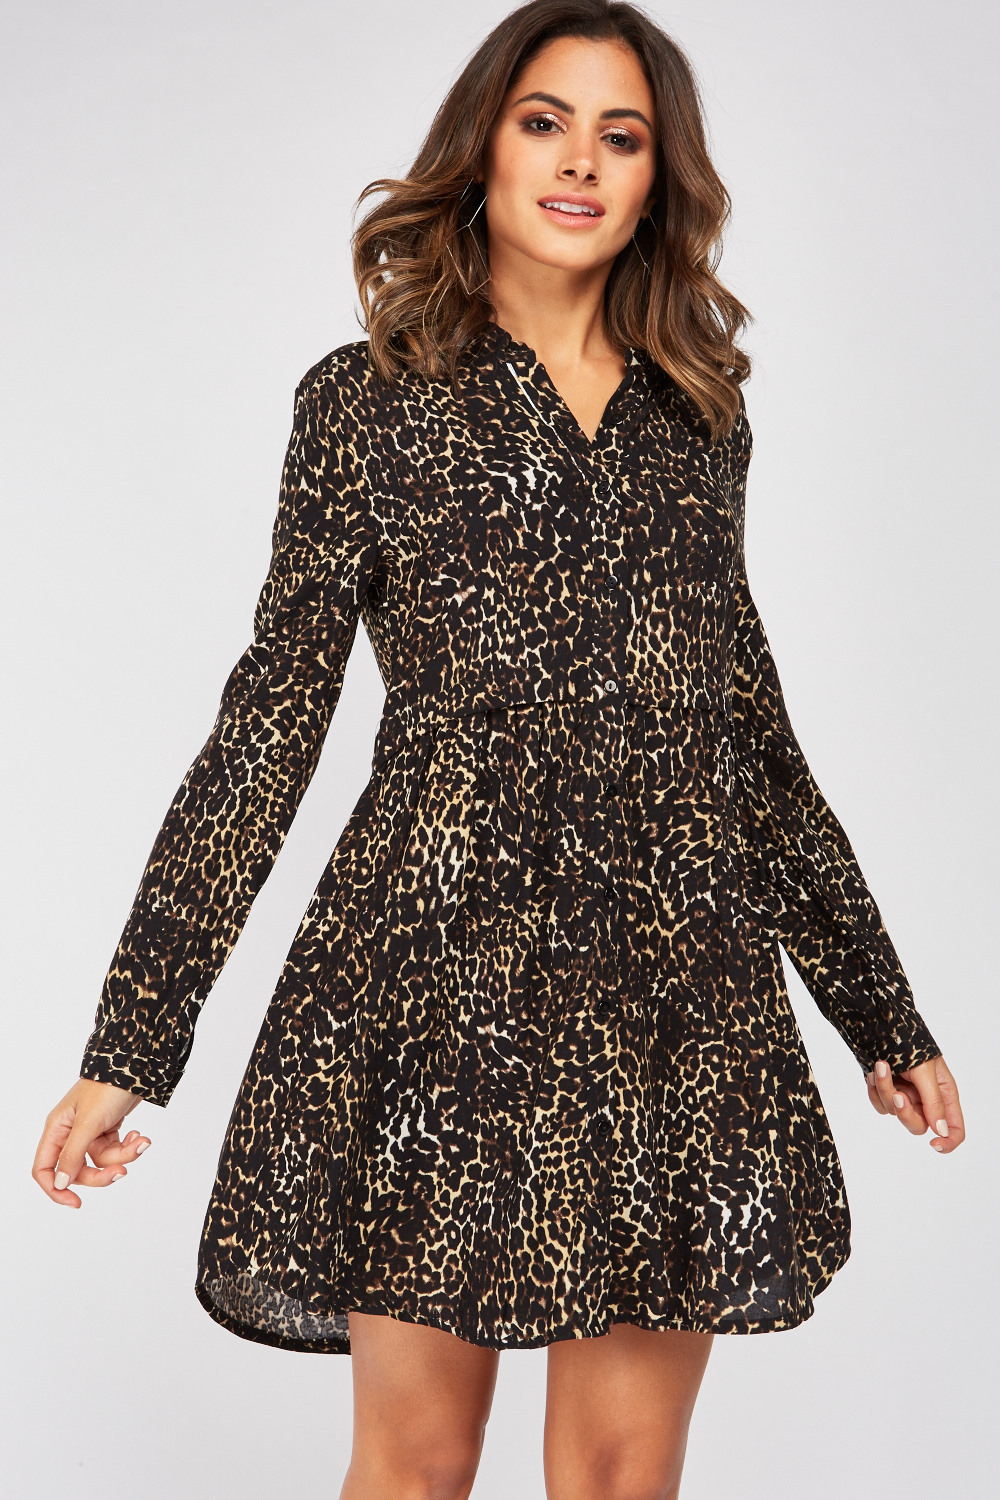 Leopard Print Smock Dress - Just $7